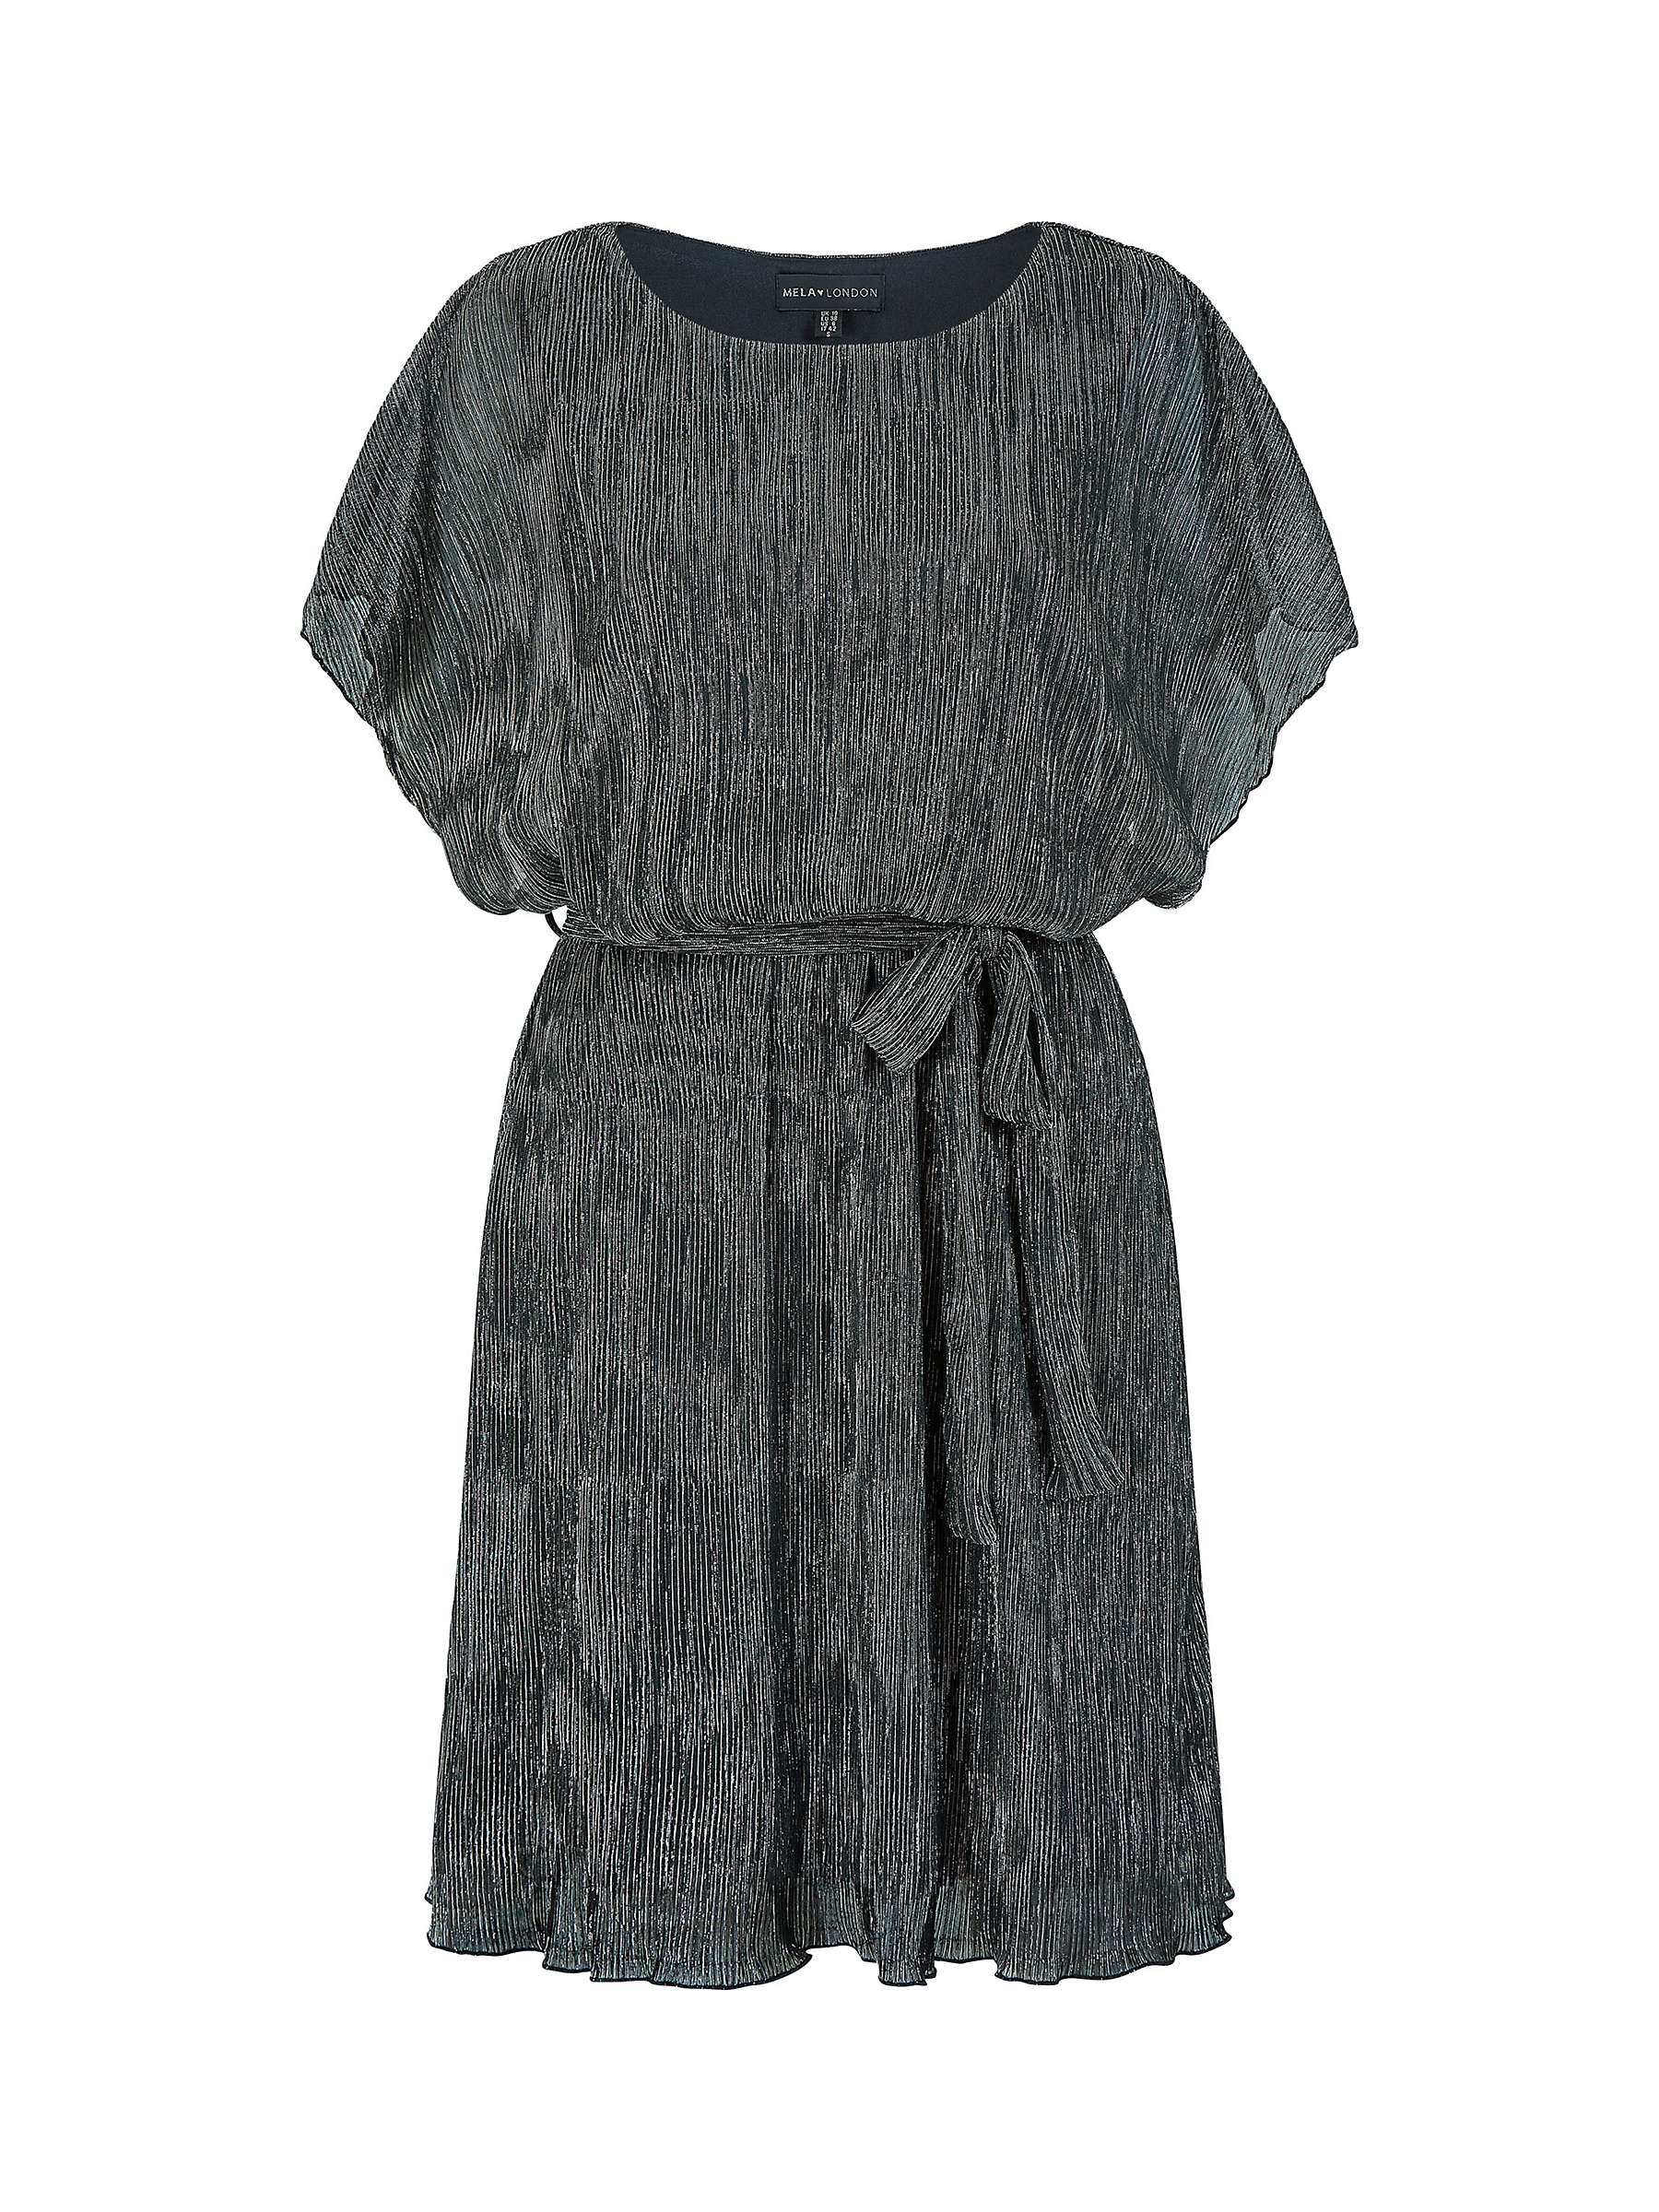 Buy Mela London Sparkle Dress, Black Online at johnlewis.com